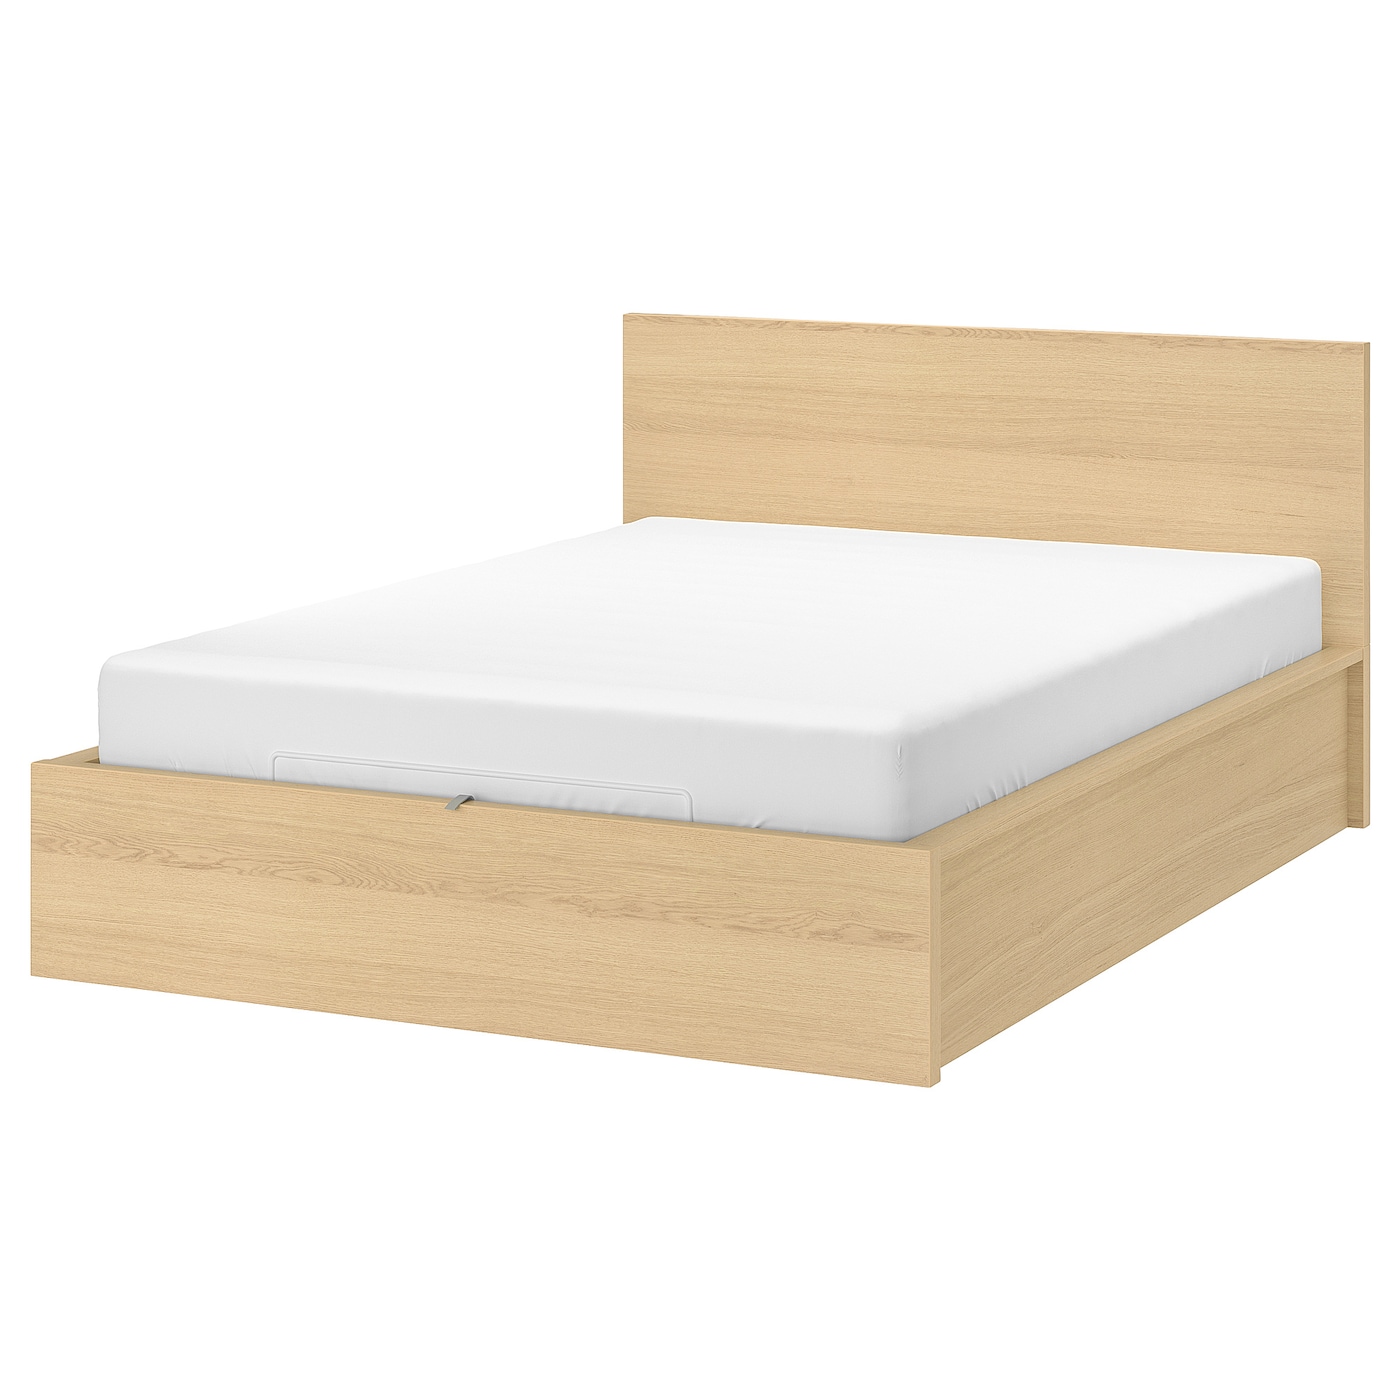 Кровать с ящиком для хранения - IKEA MALM, 200х140 см, под беленый дуб, МАЛЬМ ИКЕА